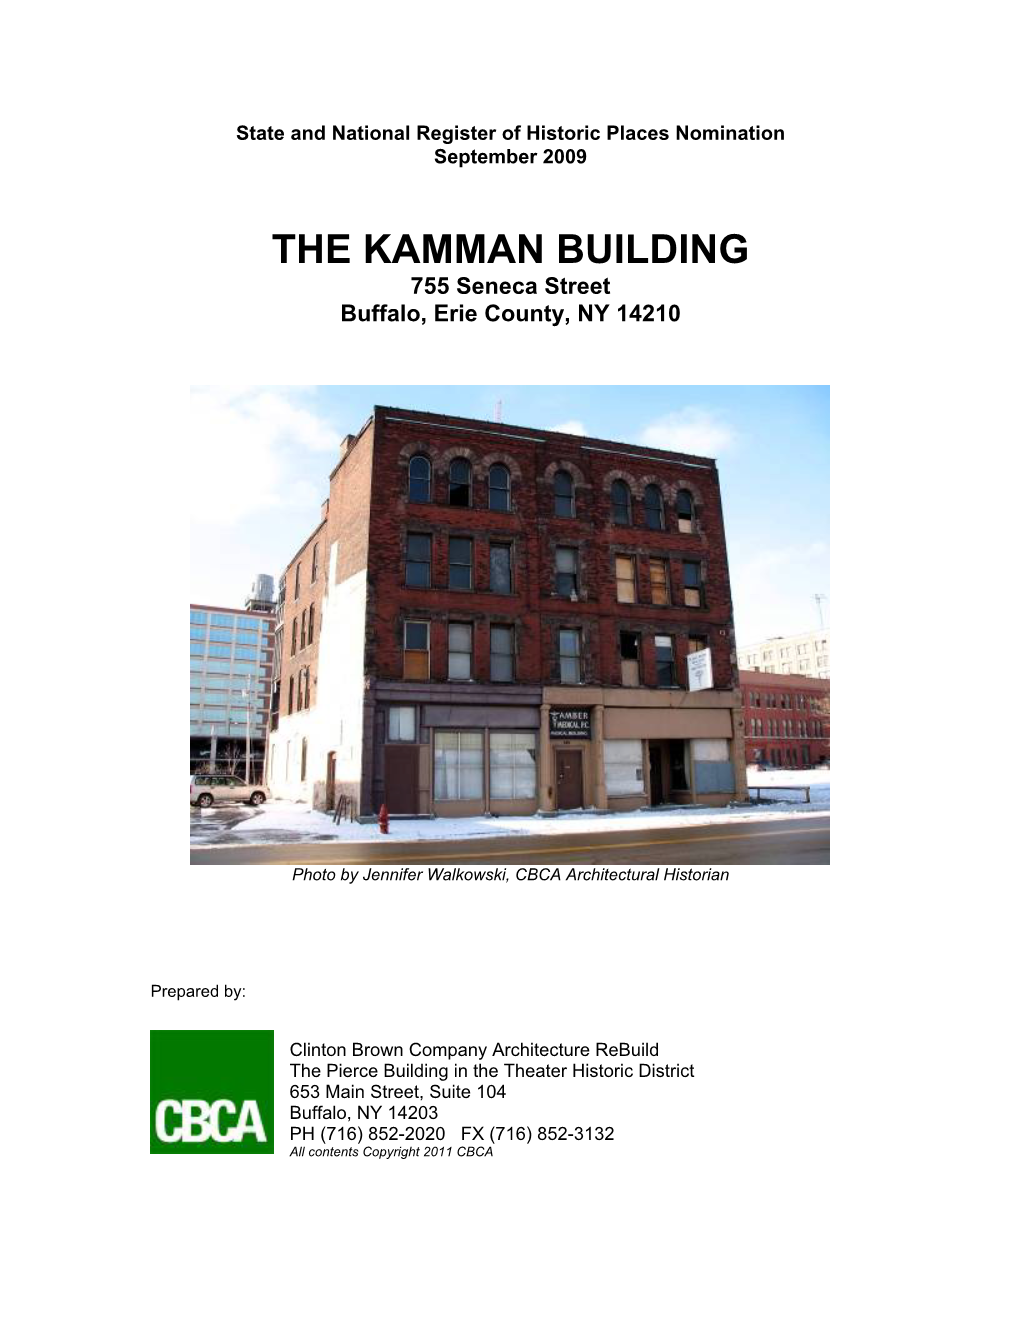 THE KAMMAN BUILDING 755 Seneca Street Buffalo, Erie County, NY 14210